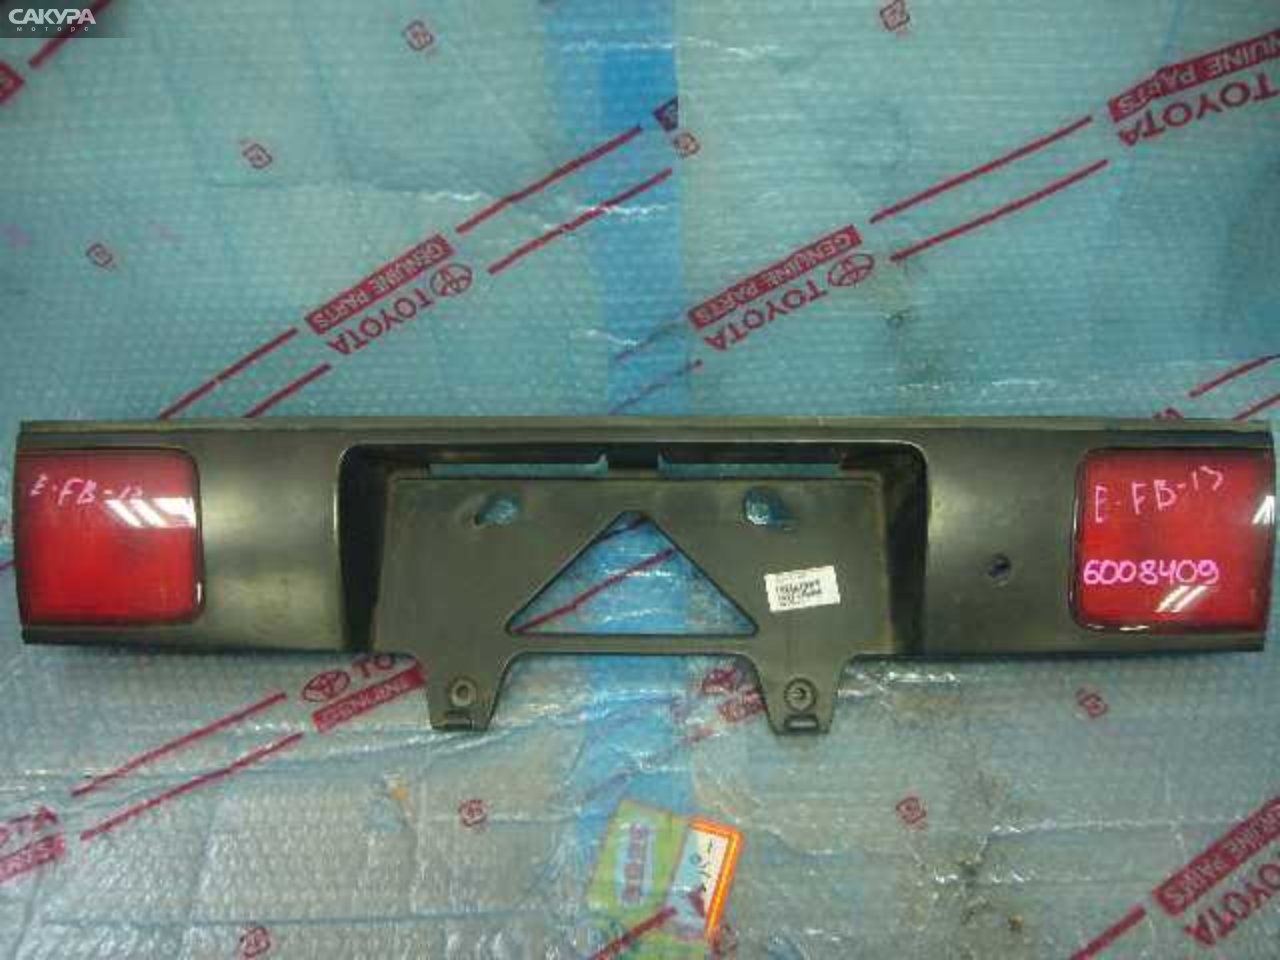 Фонарь вставка багажника Nissan Sunny B13 4620B: купить в Сакура Кемерово.